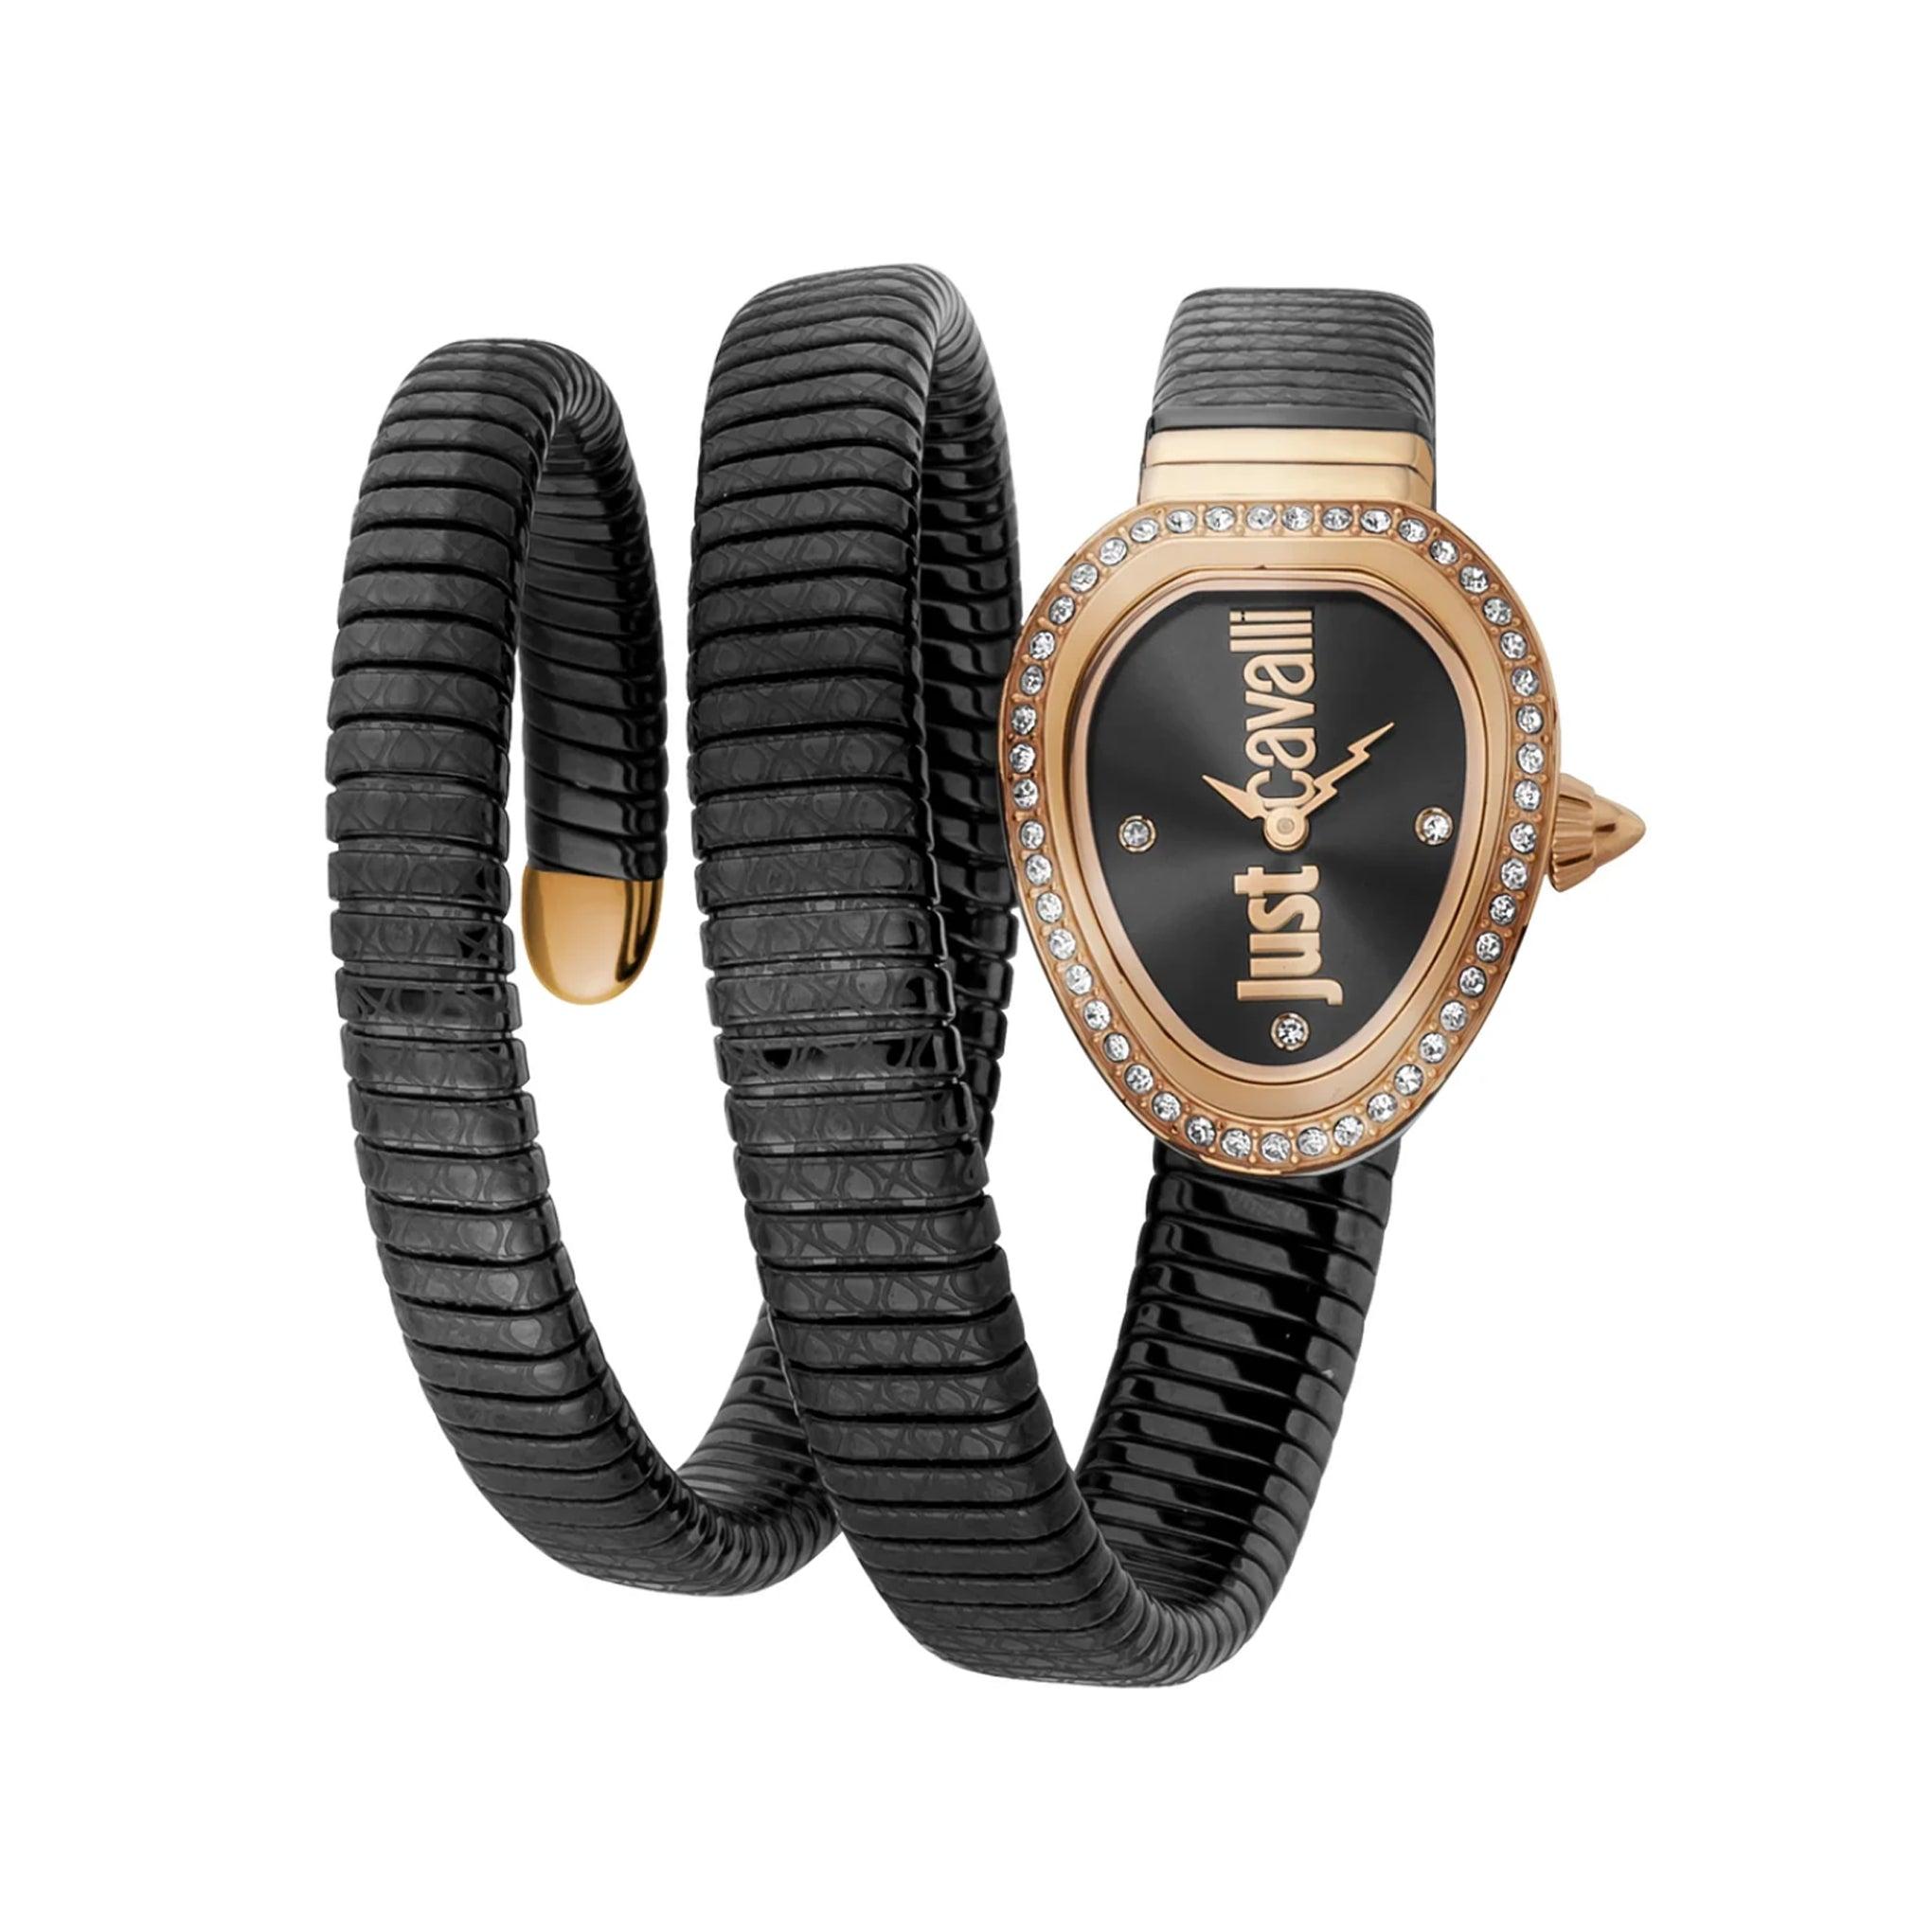 ساعة يد نسائية بشكل ثعبان - أسود - بحزام معدني مقاوم للصدأ جست كافالي Just Cavalli Glam Chic Snake Women's Coated Stainless Steel Watch